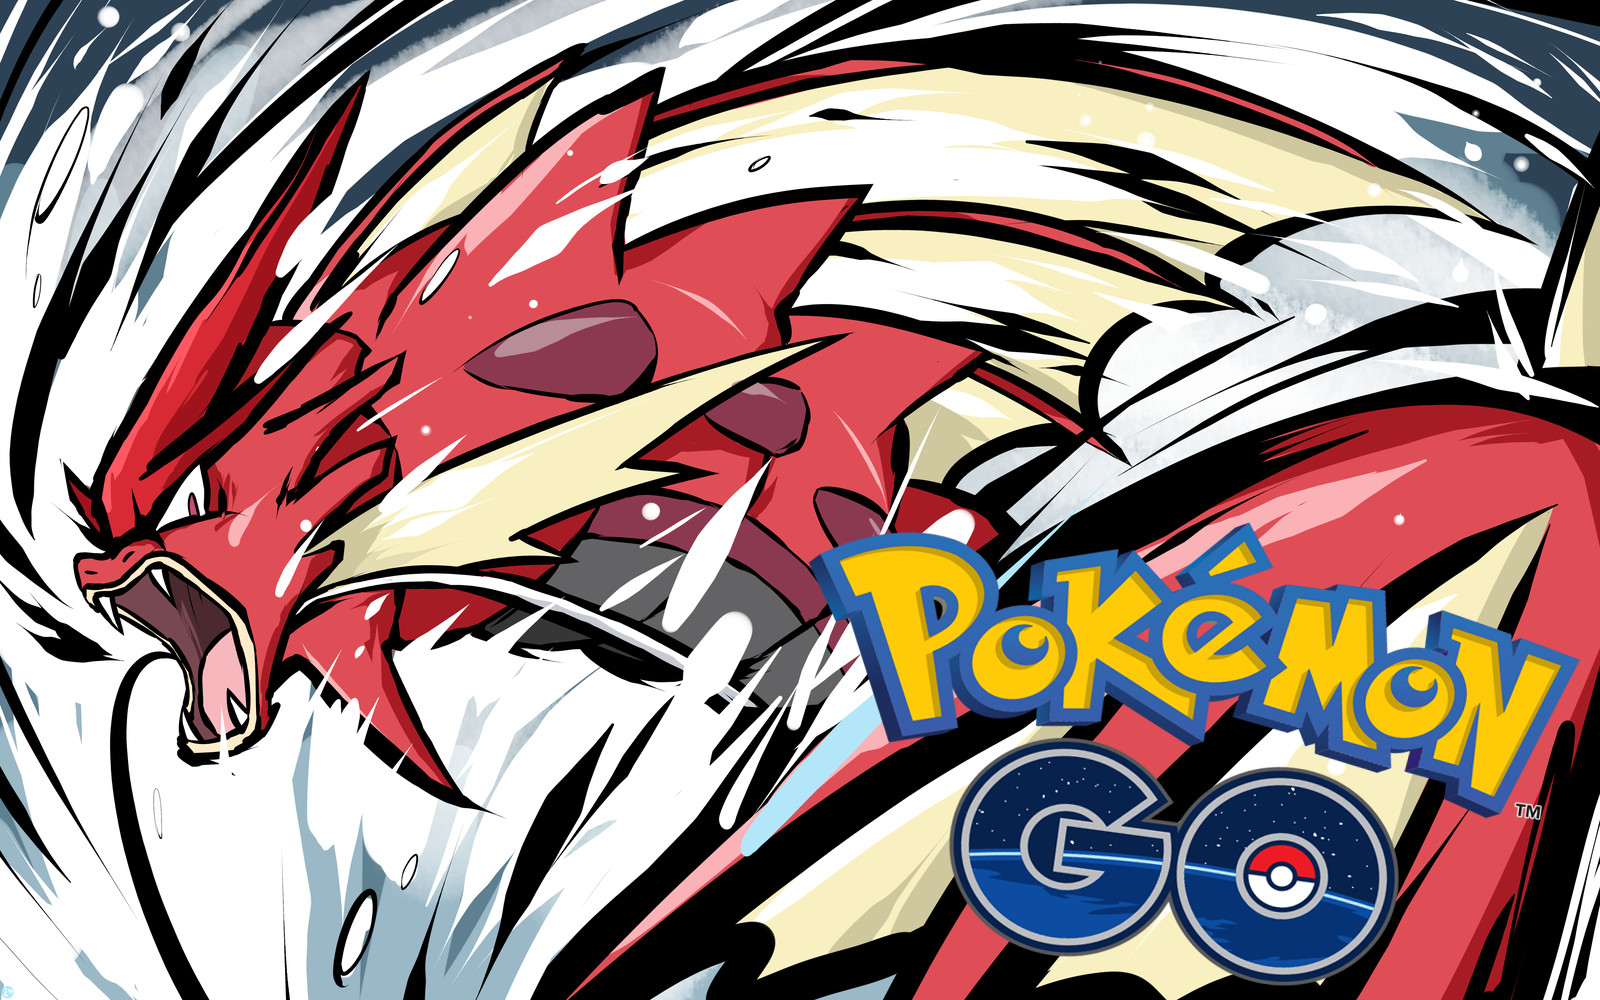 Shiny Magikarp pode ser encontrada em Pokémon GO - Pokémothim